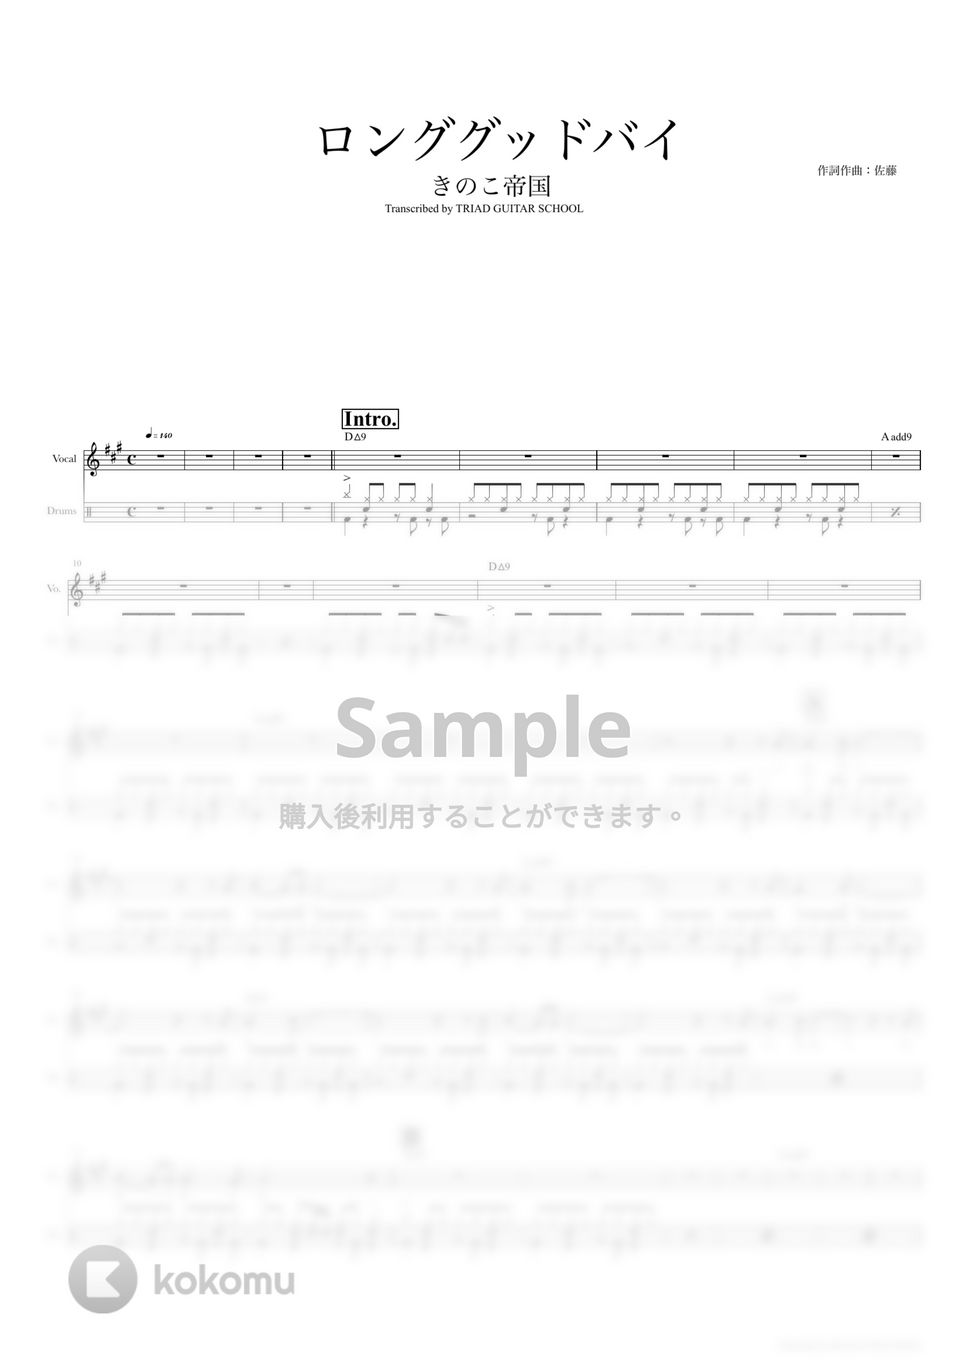 きのこ帝国 - ロンググッドバイ (ドラムスコア・歌詞・コード付き) by TRIAD GUITAR SCHOOL